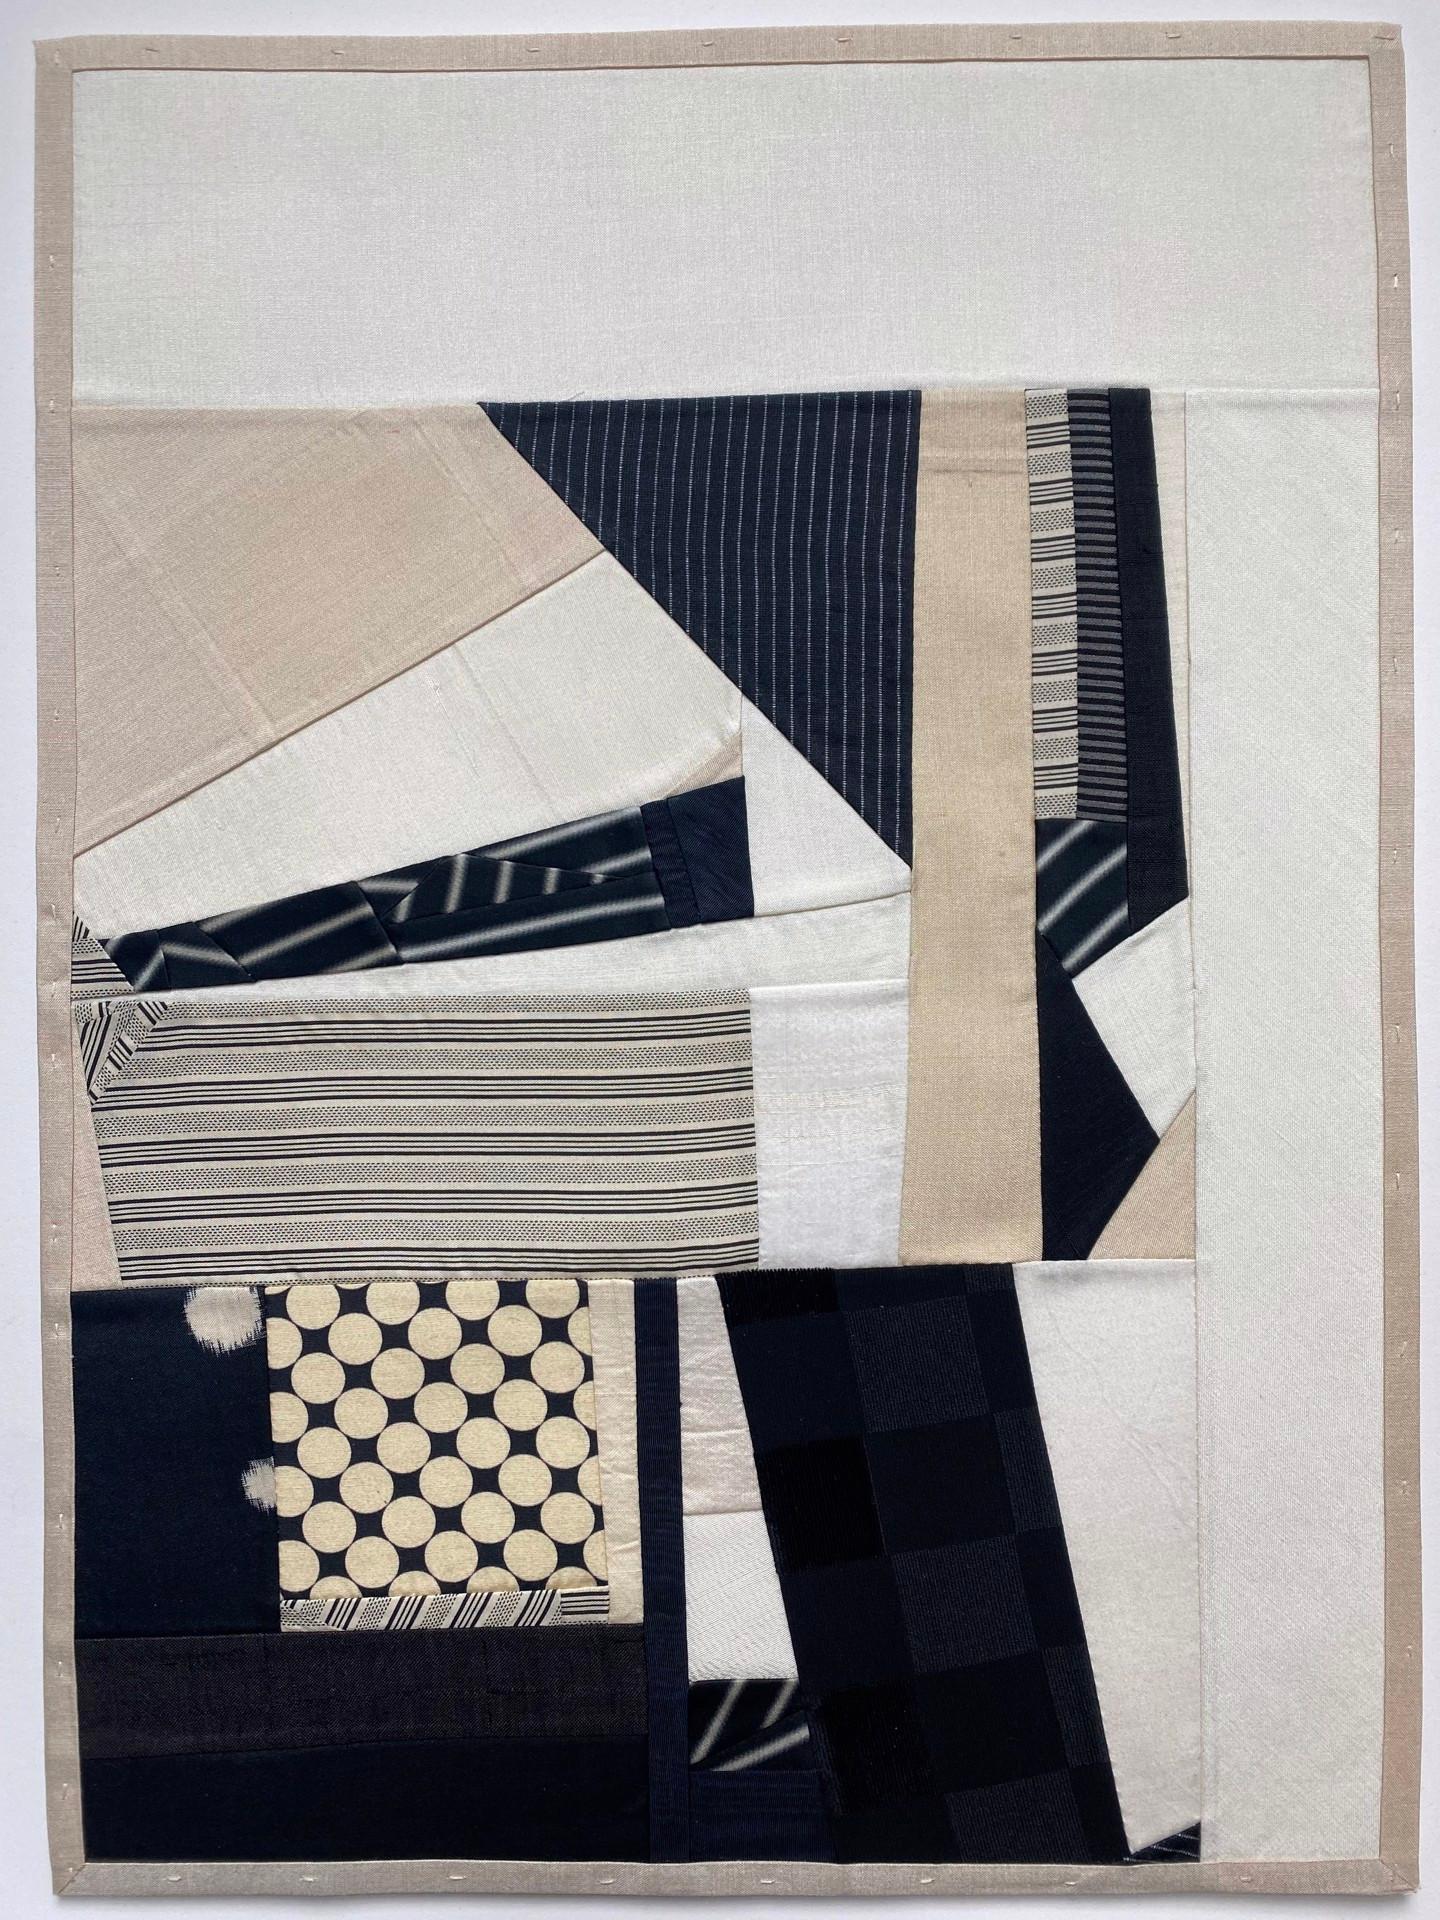 Les collages de tissus de Fabrice Smith sont comme des bribes de quilts contemporains. Elle recycle des tissus, tels que les doublures en soie d'anciens kimonos japonais, qu'elle utilise pour réaliser une grande partie de son travail actuel. Les